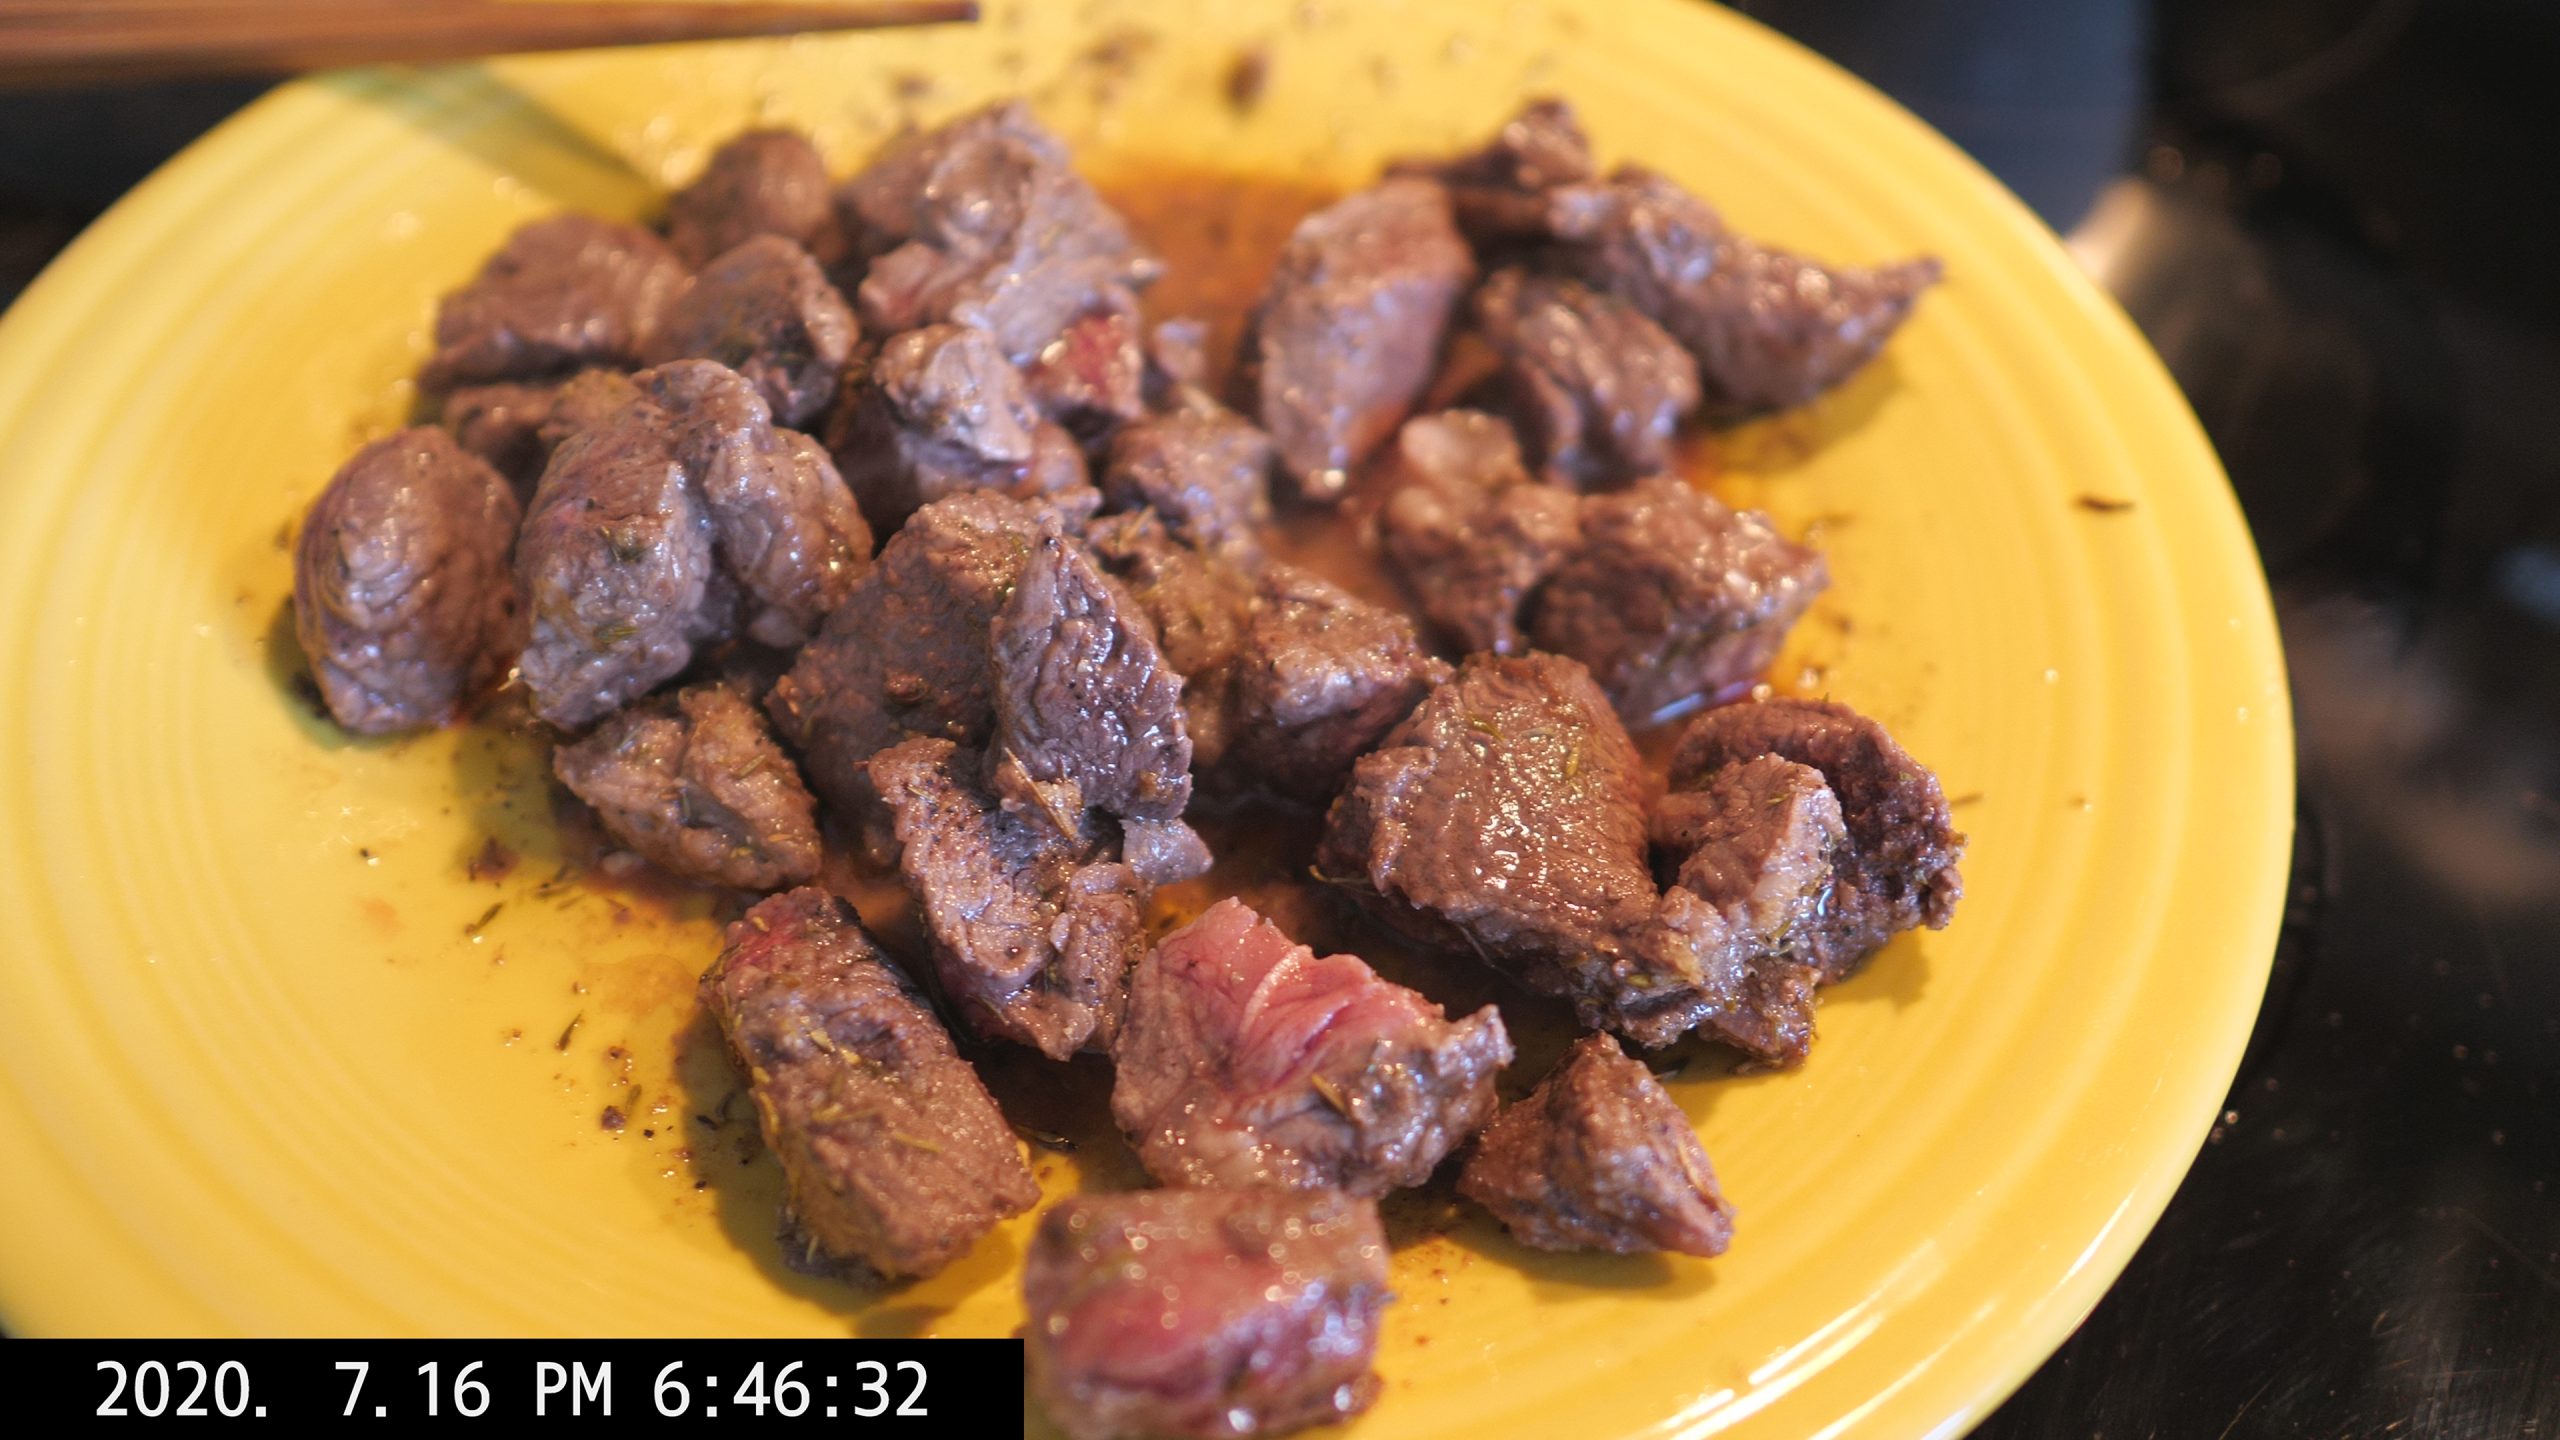 meat steak